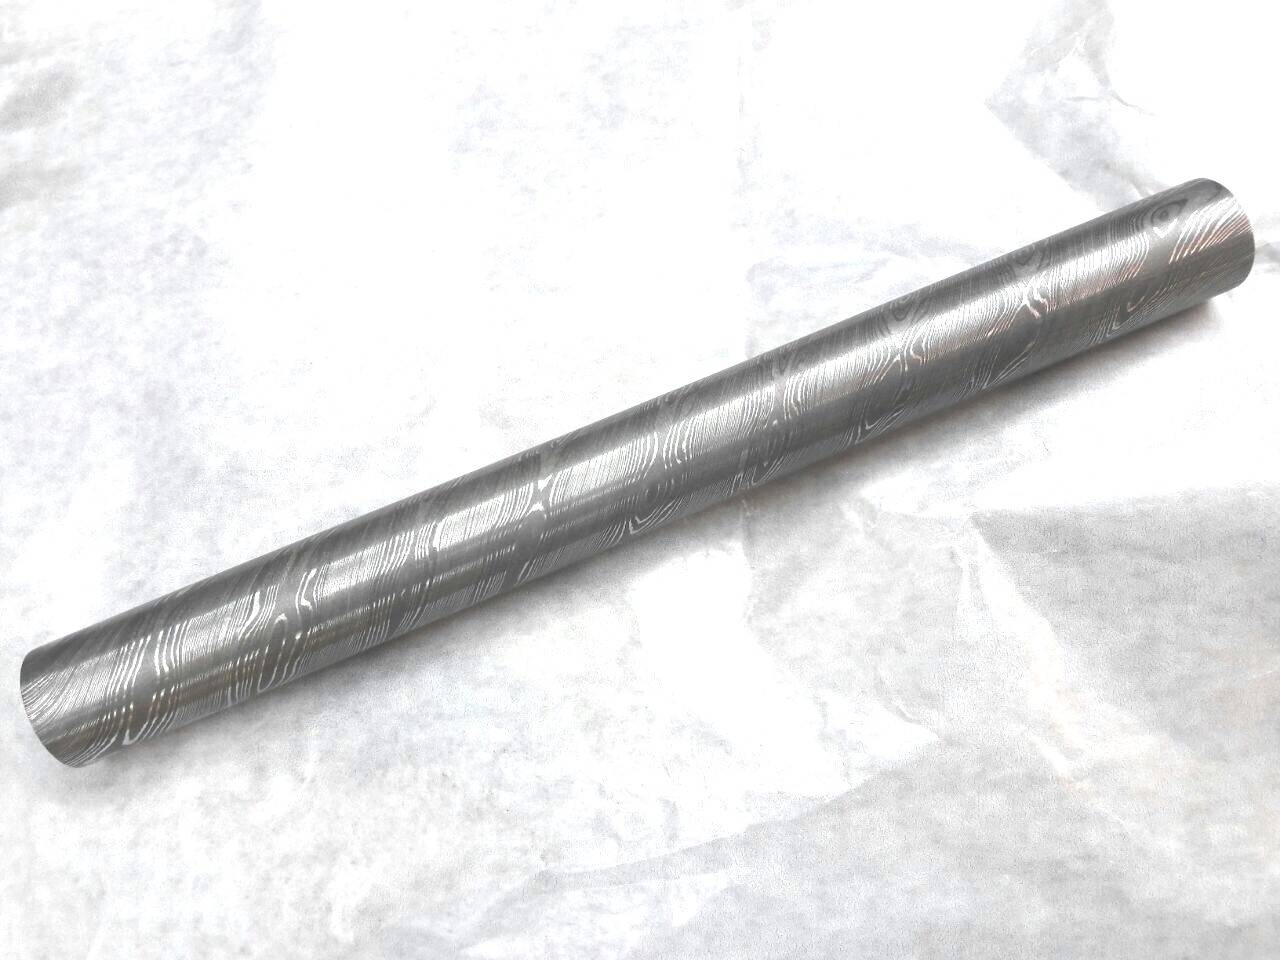 Damascus Steel Rod for Knife -Jewellery-Pen Making